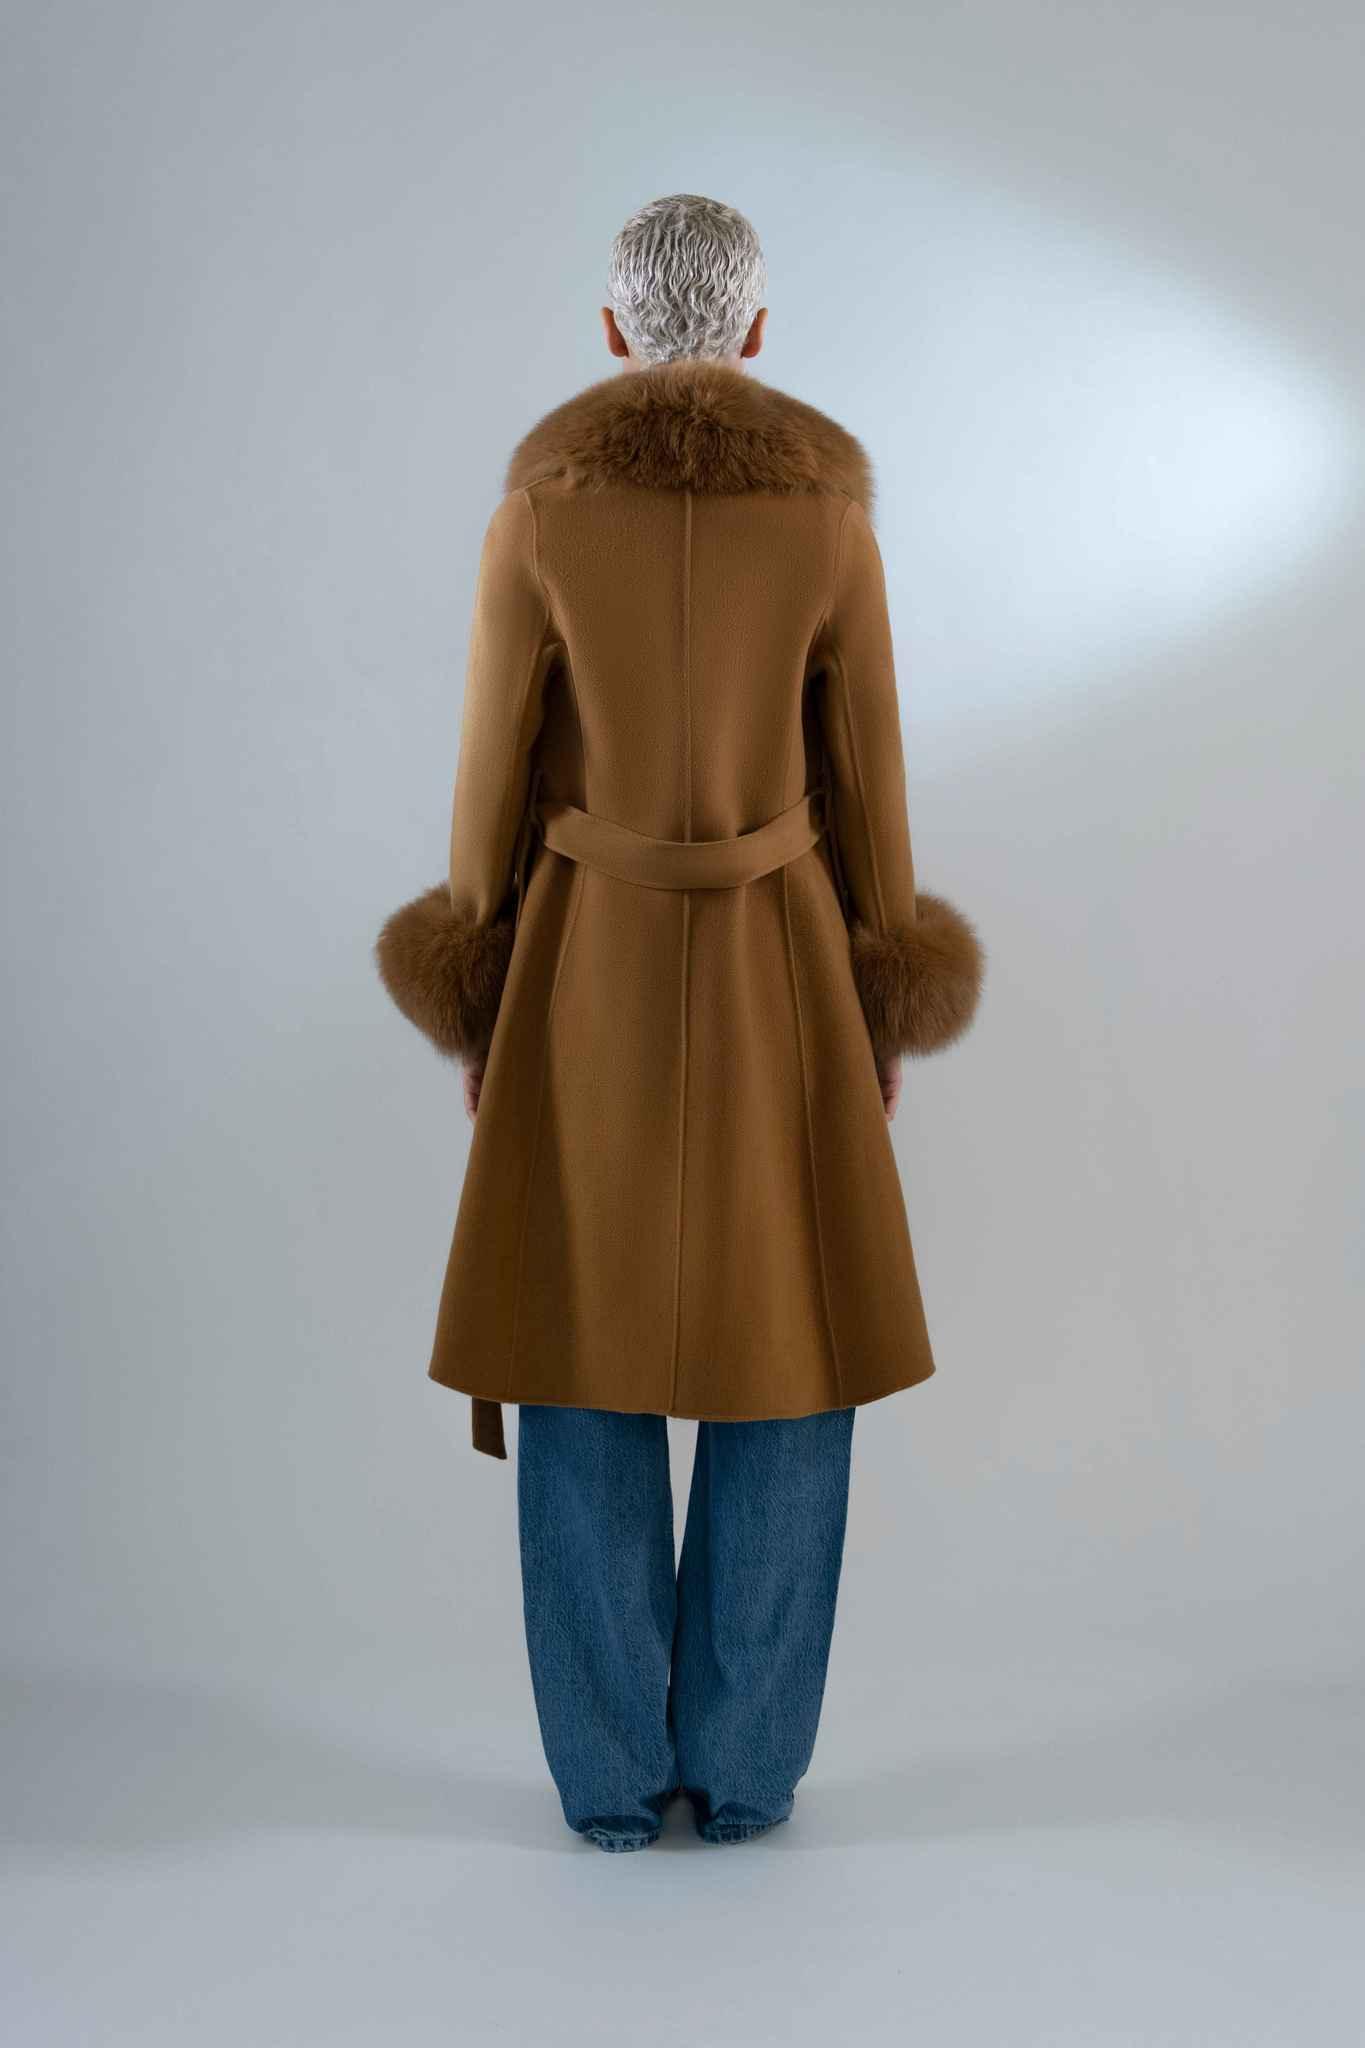 Devon Coat in Cashmere - Tutussie